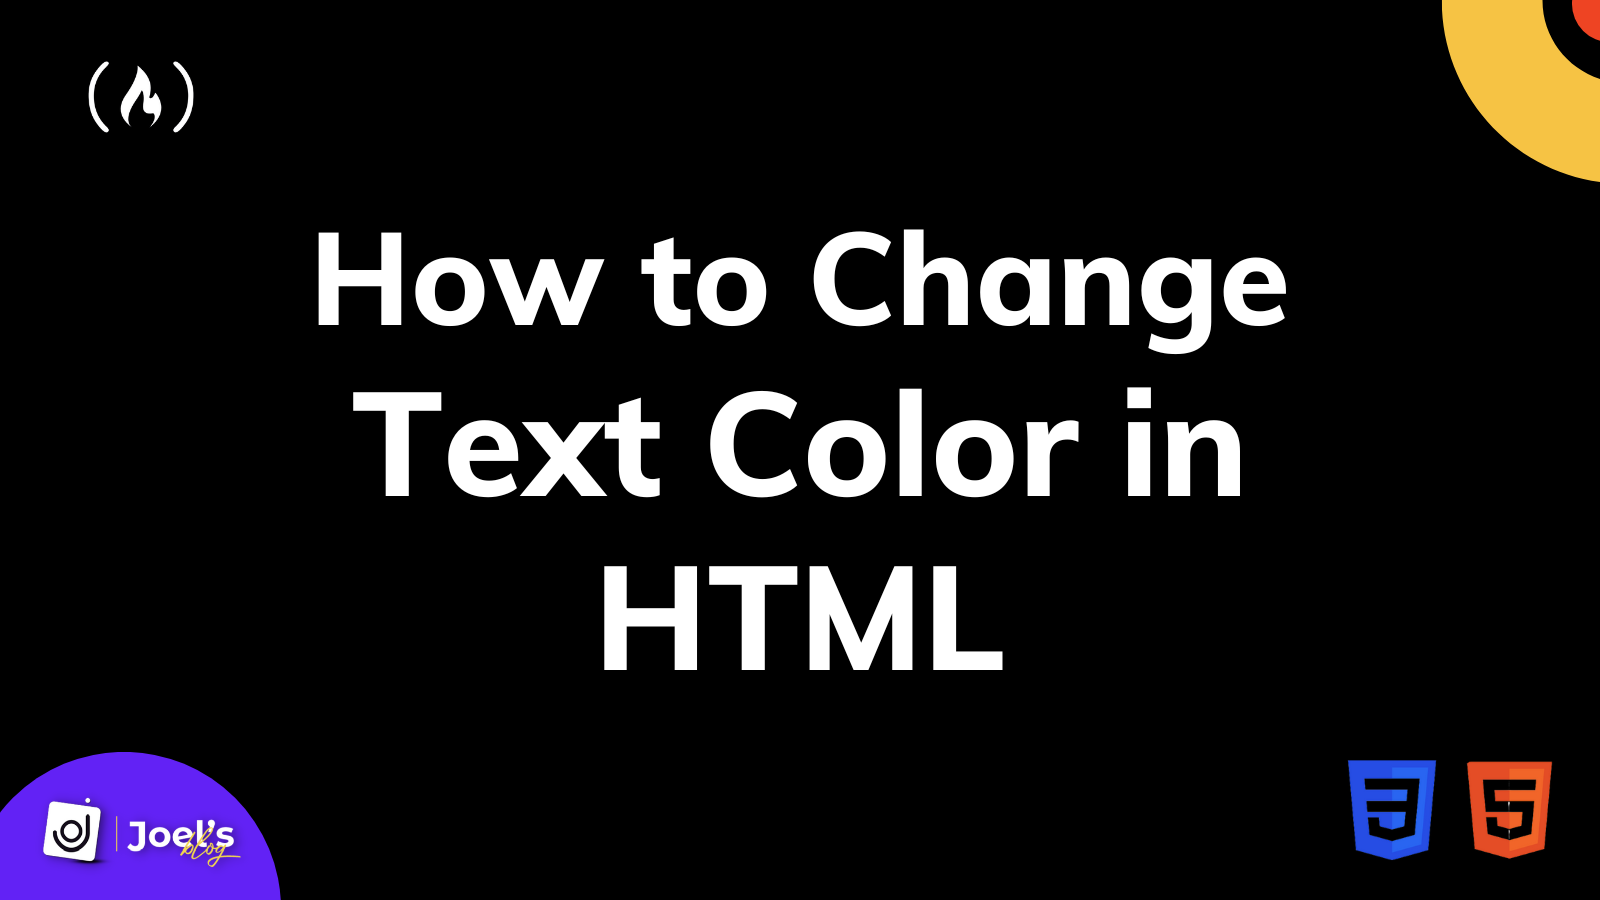 Change Text Color in HTML: Việc thay đổi màu sắc của văn bản trên trang web có thể tạo ra các ứng dụng thú vị và độc đáo. Xem hình ảnh để học cách sử dụng một số thuộc tính HTML để thay đổi màu sắc của văn bản và tạo nên một trang web có tính thẩm mỹ cao.